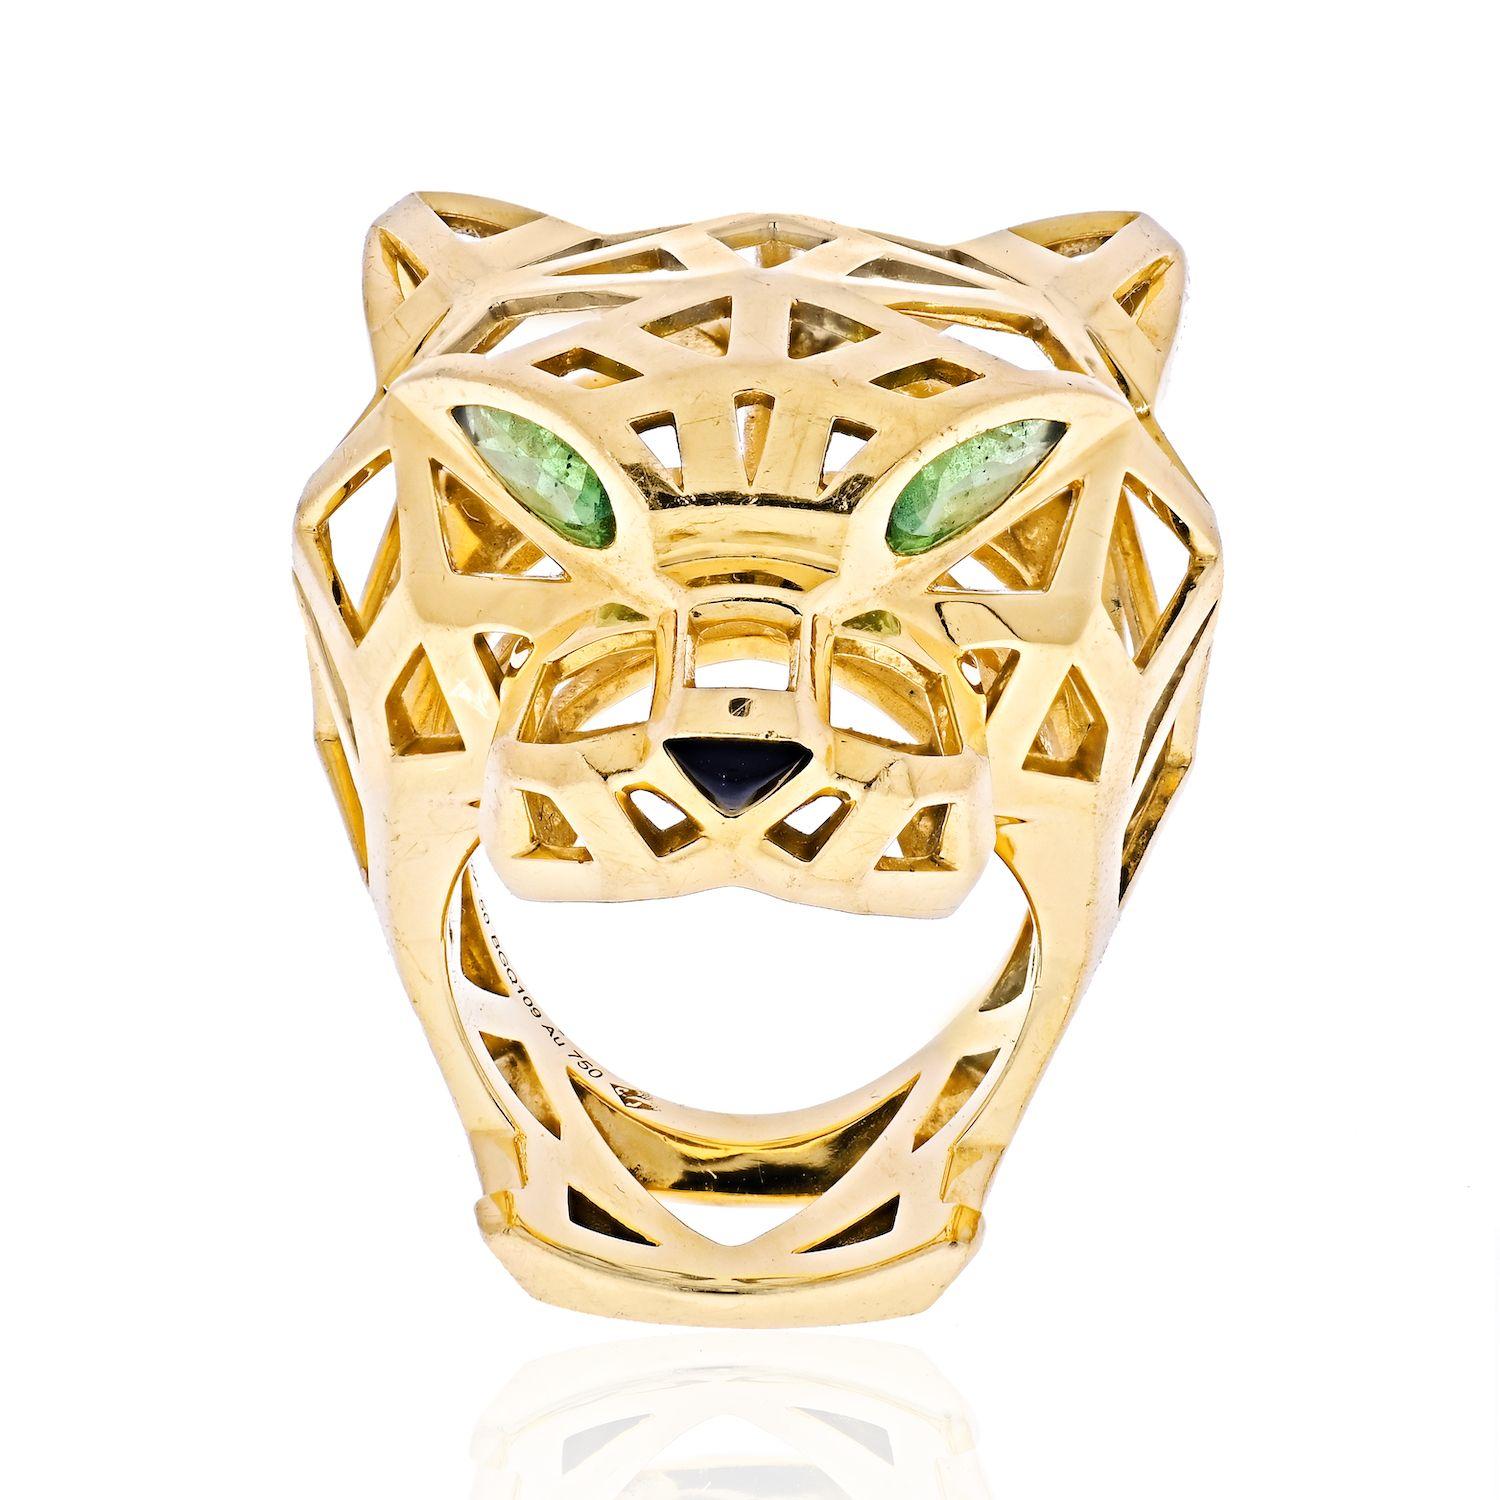 Der emblematische Panther ist seit 1914 ein wichtiger Bestandteil des Designs von Cartier. Dieses äußerst modische Design aus der Kollektion Panthère de Cartier ist aus 18 Karat Gelbgold gefertigt und besticht durch seine fast skelettartige Optik.